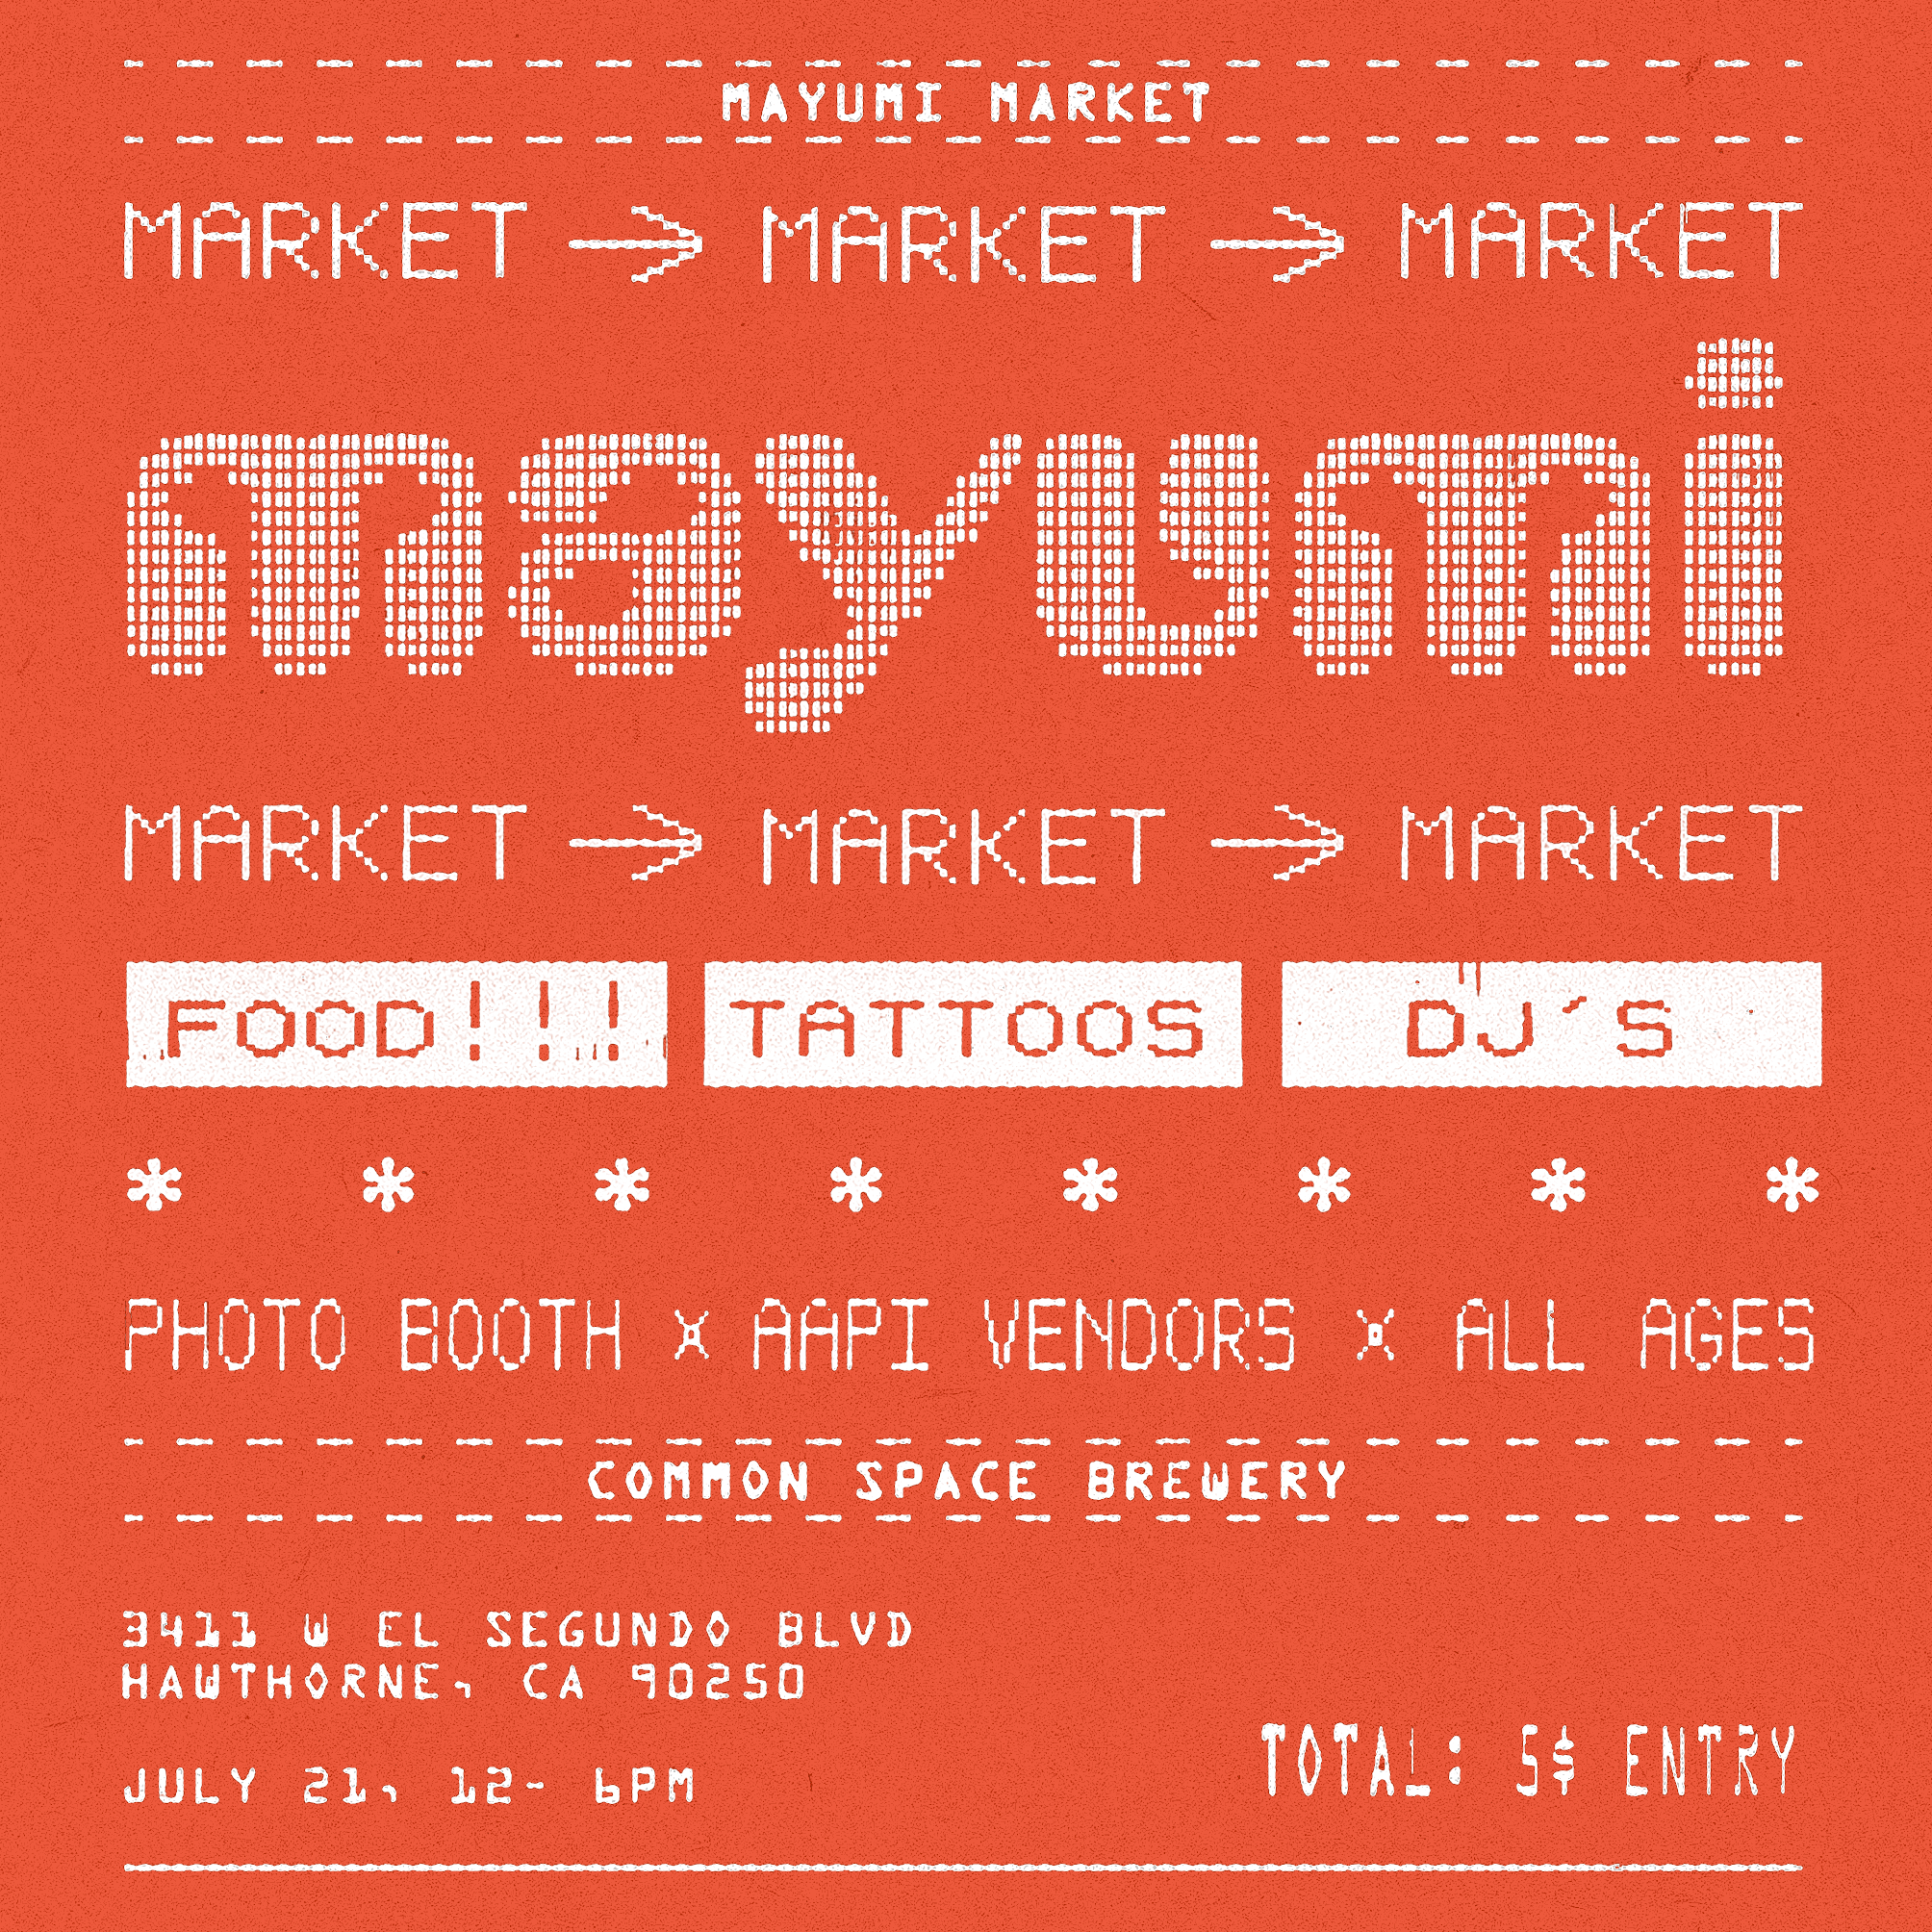 Mayumi Market